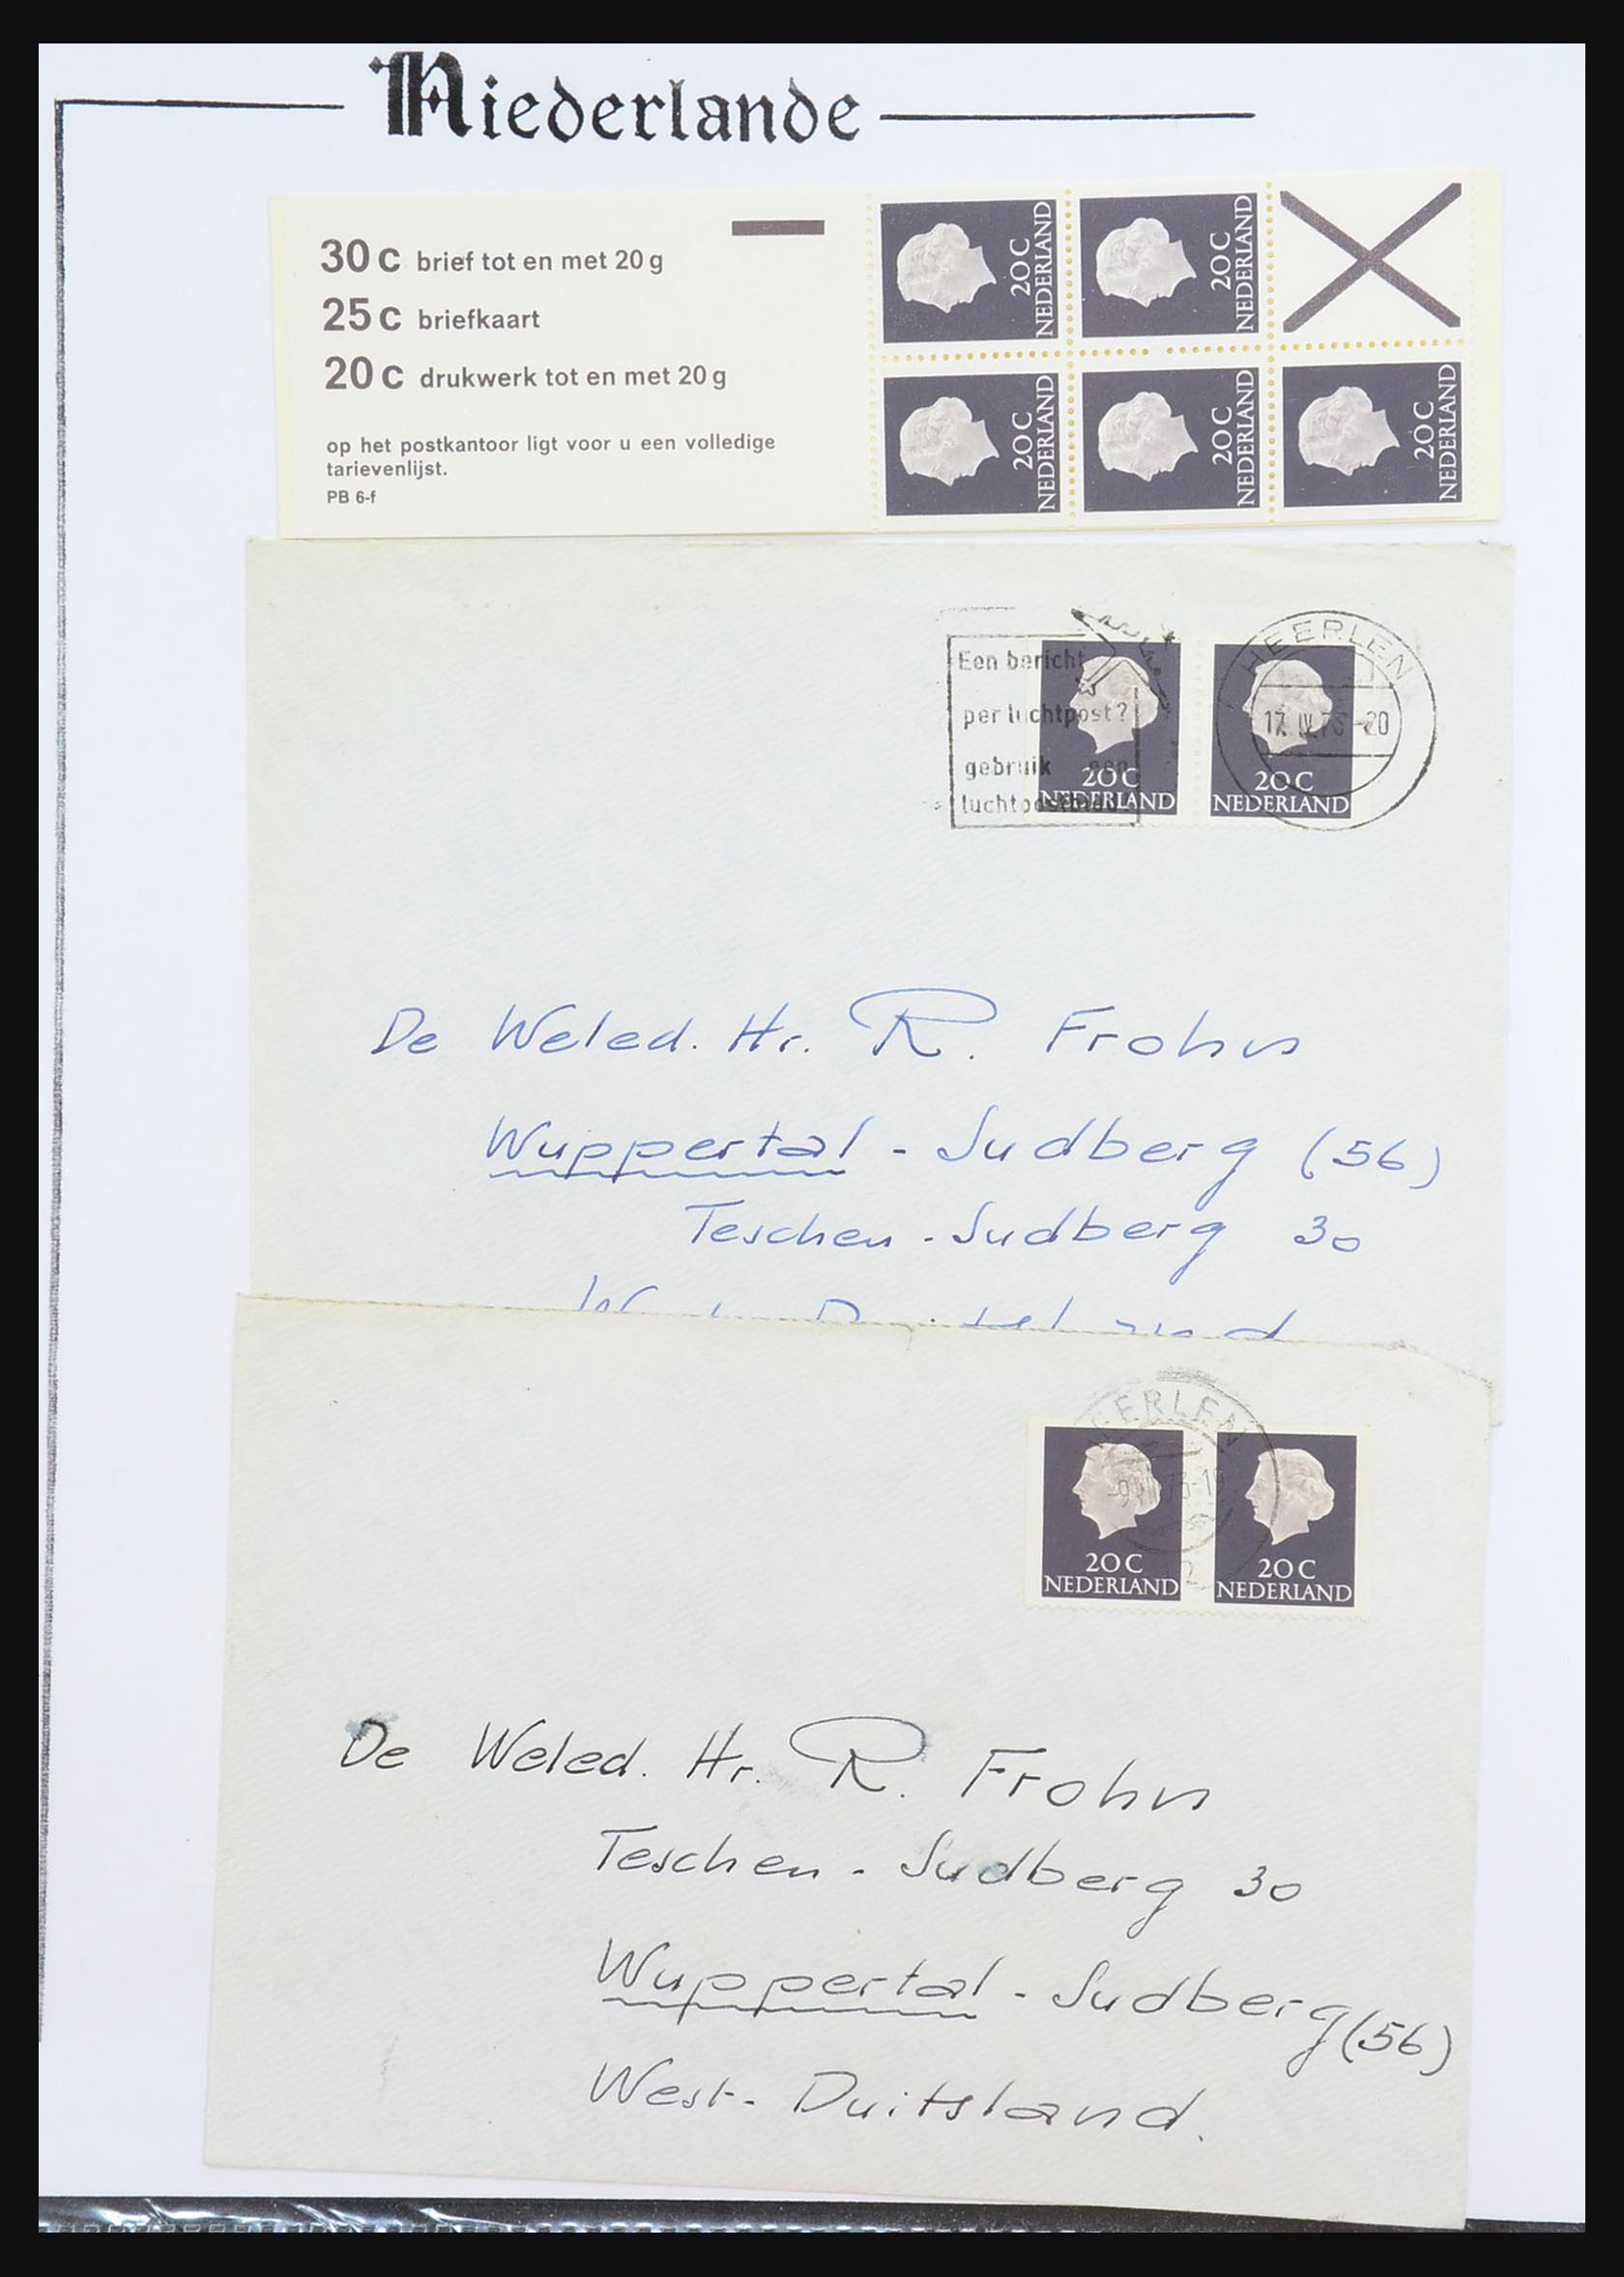 31311 020 - 31311 Netherlands stamp booklets 1964-1994.